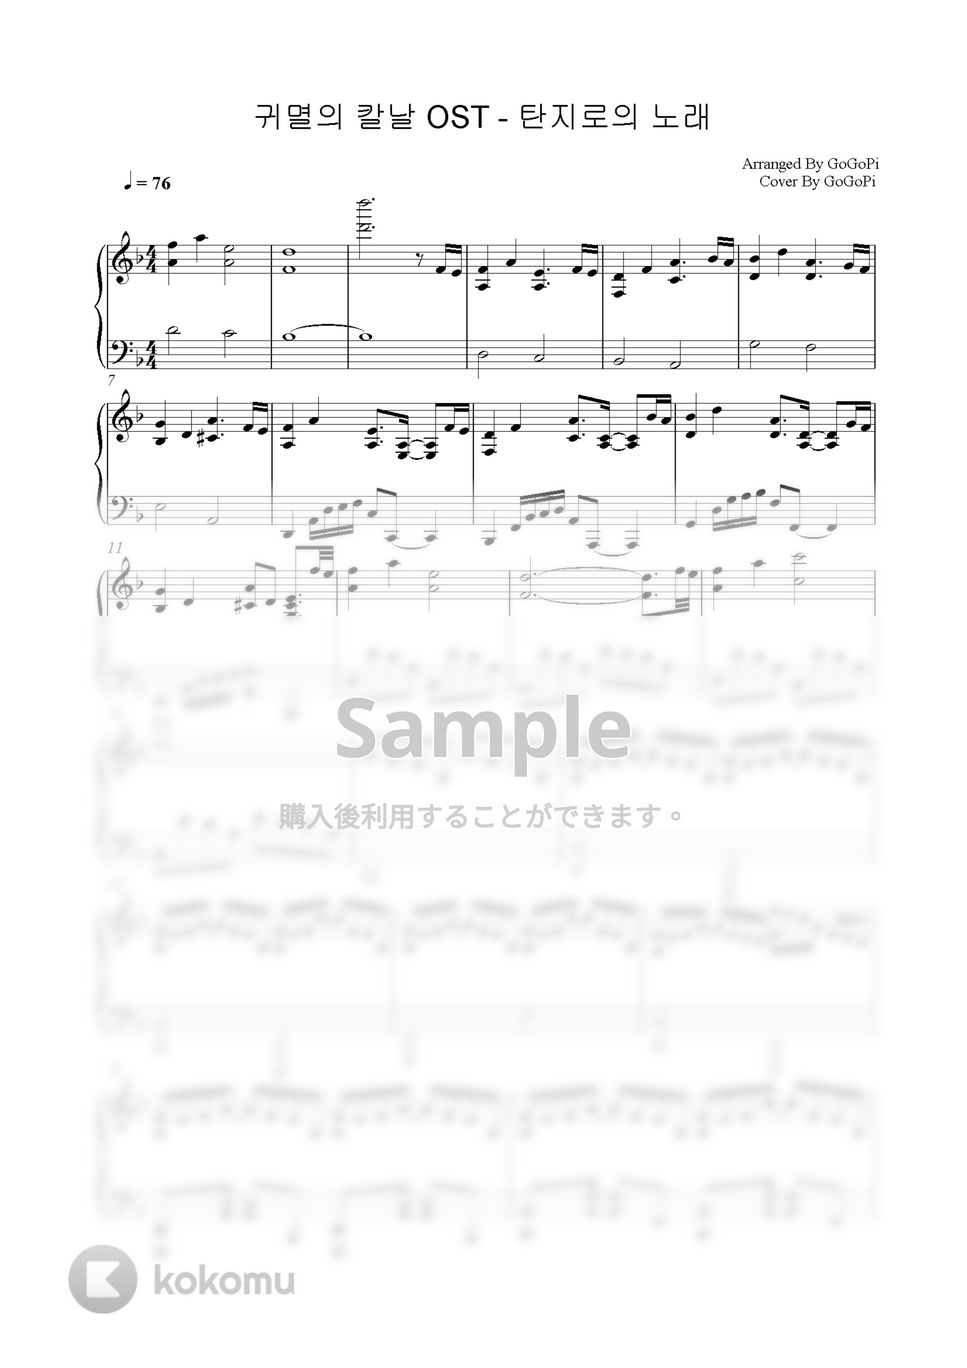 鬼滅の刃 - 竈門炭治郎のうた (Piano Ver.) by GoGoPiano